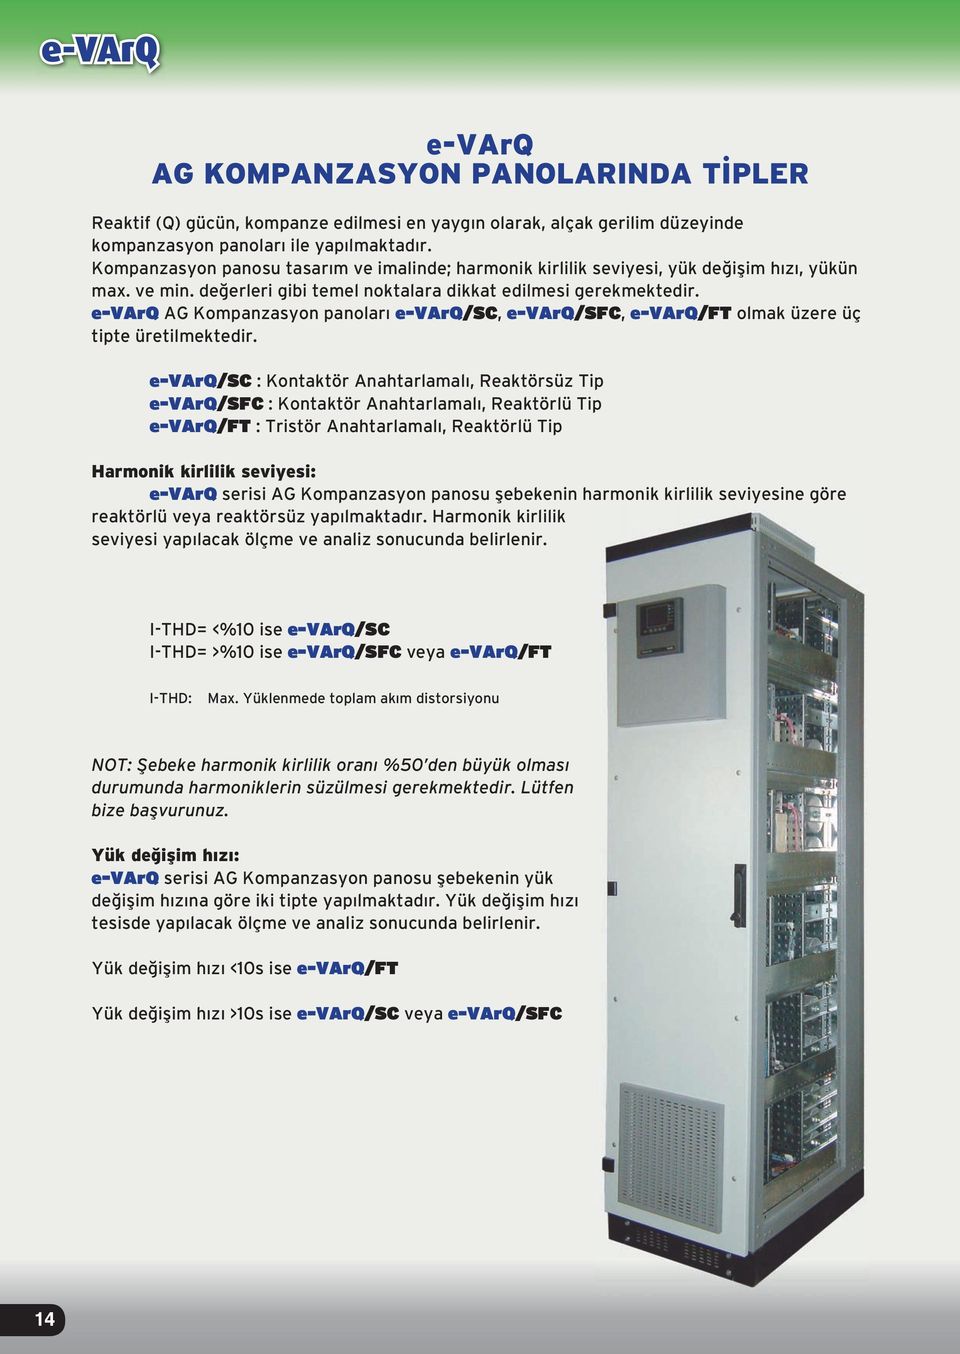 e-varq AG Kompanzasyon panoları e-varq/sc, e-varq/sfc, e-varq/ft olmak üzere üç tipte üretilmektedir.